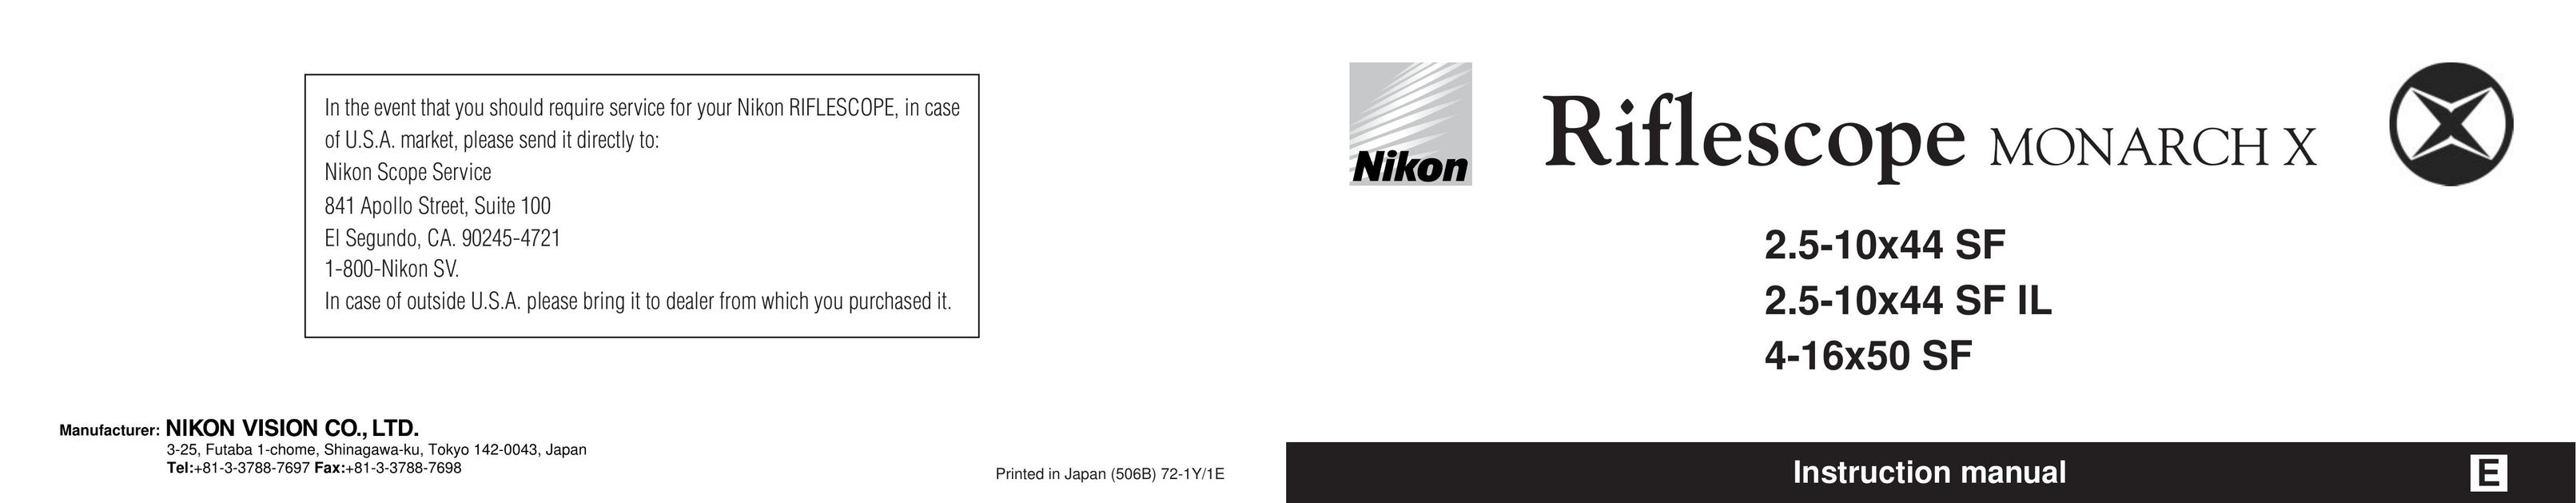 Nikon 2.5-10x44 SF IL Binoculars User Manual